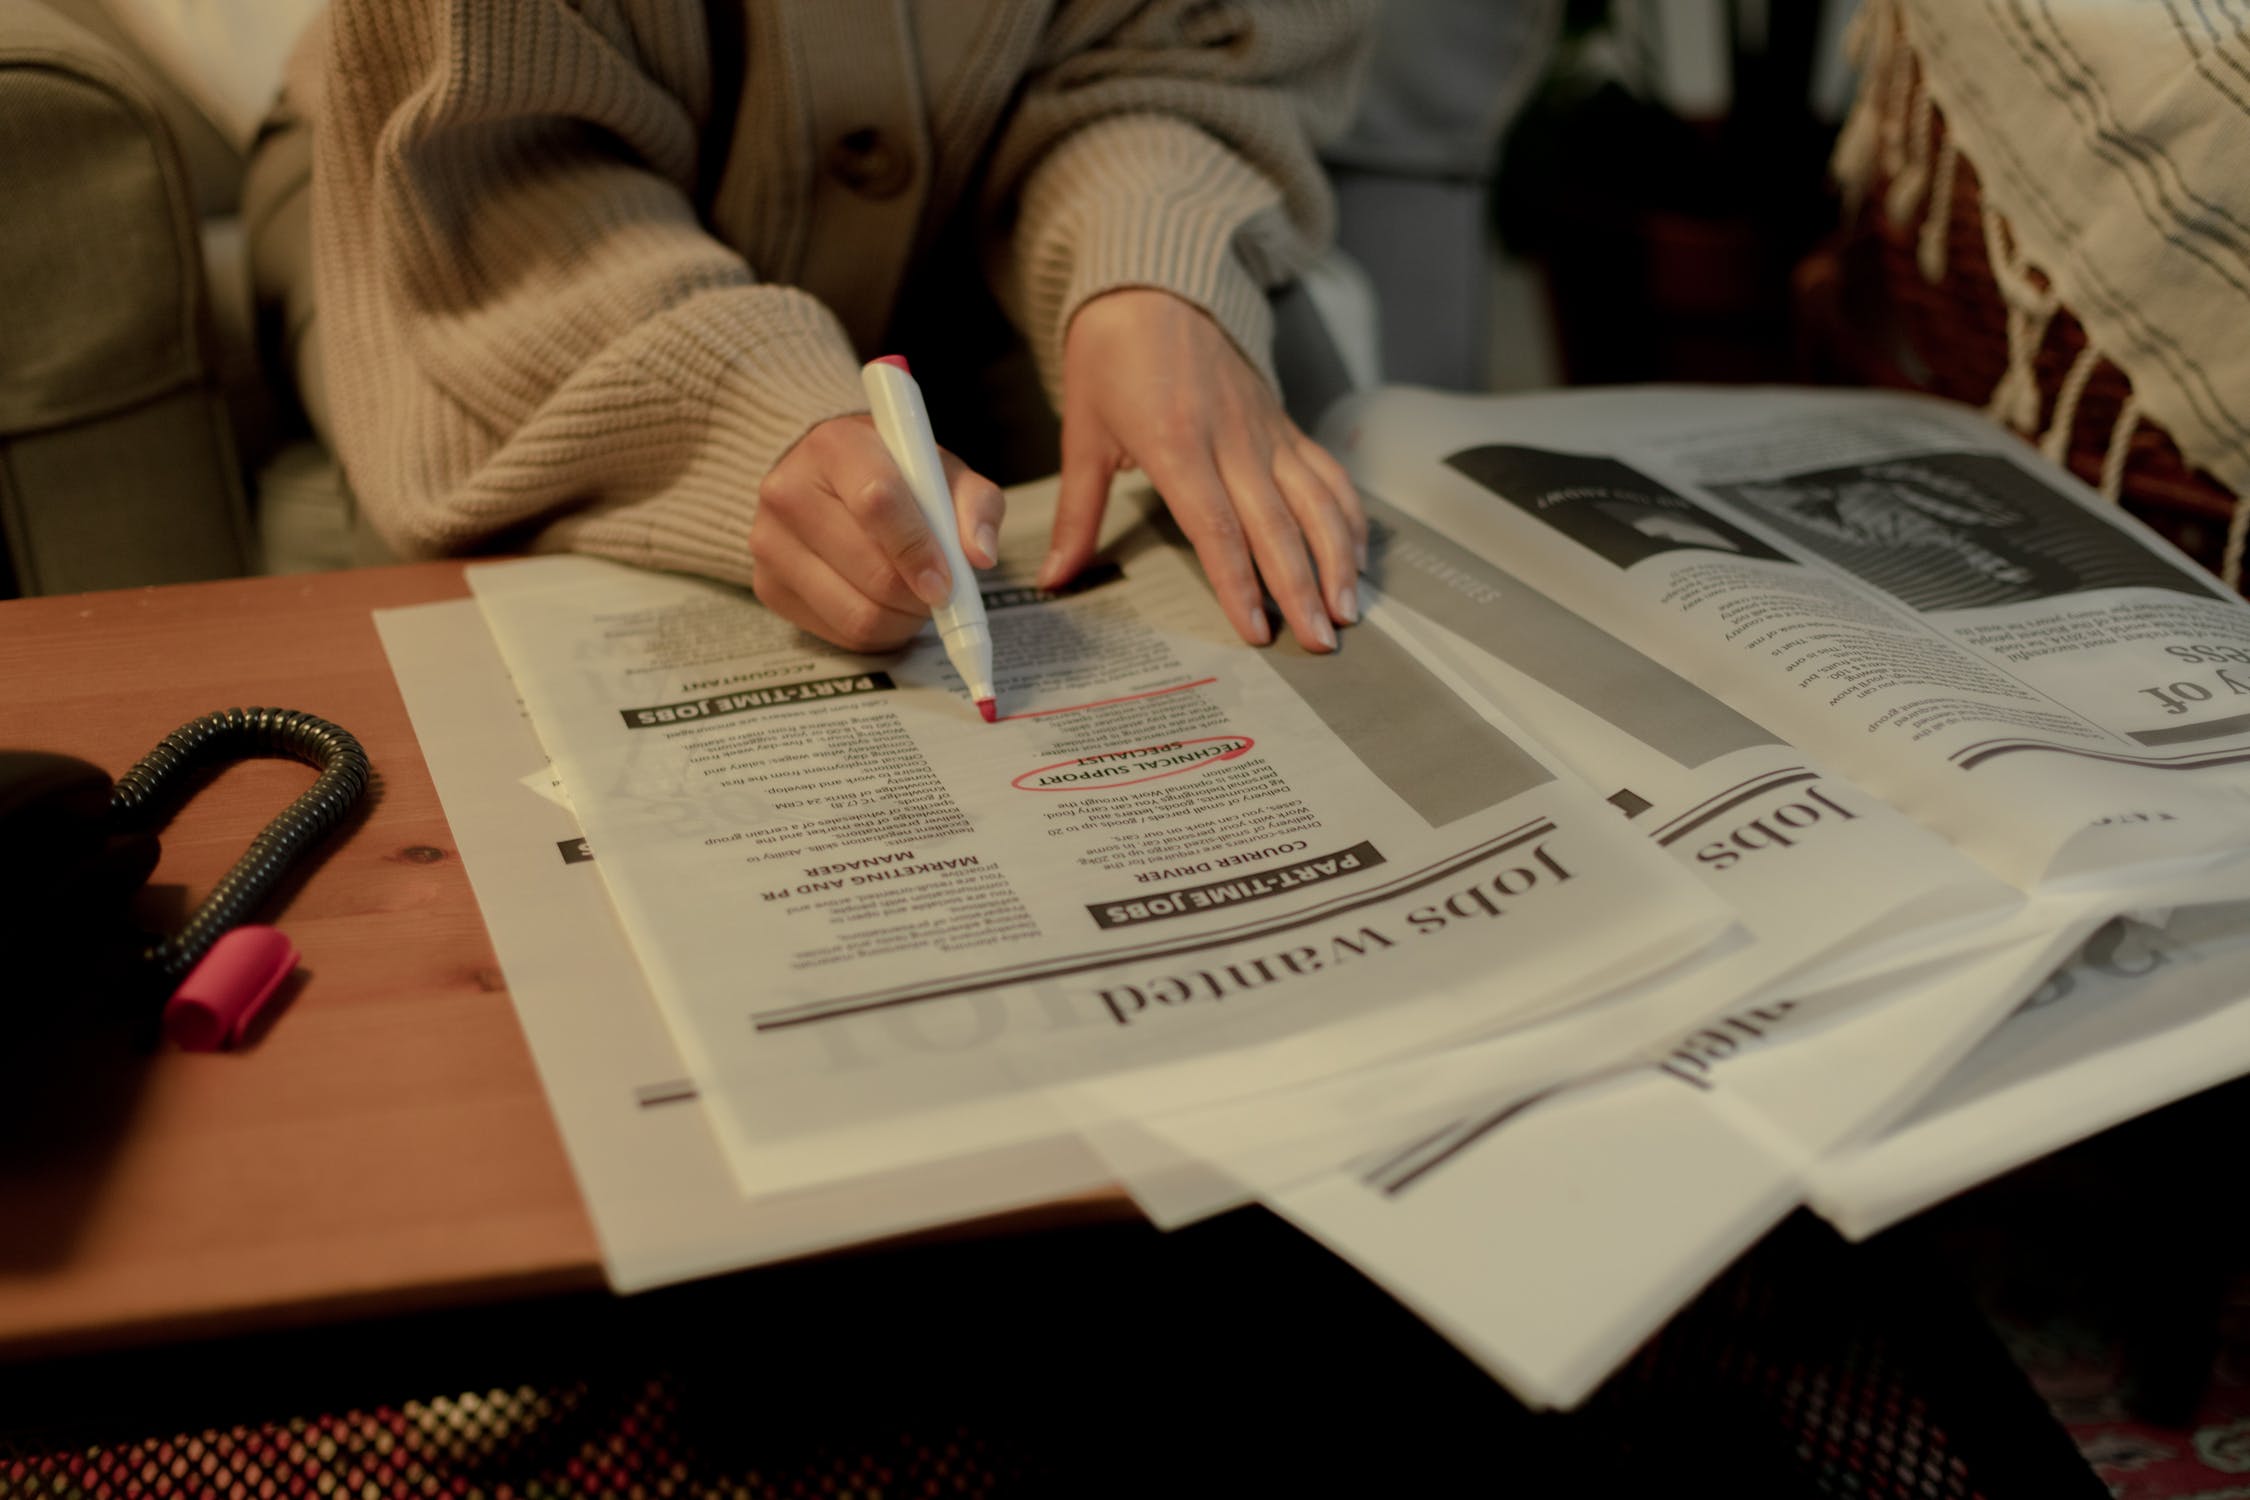 La imagen muestra una persona que está subrayando determinada información en un periódico con un rotulador rojo.